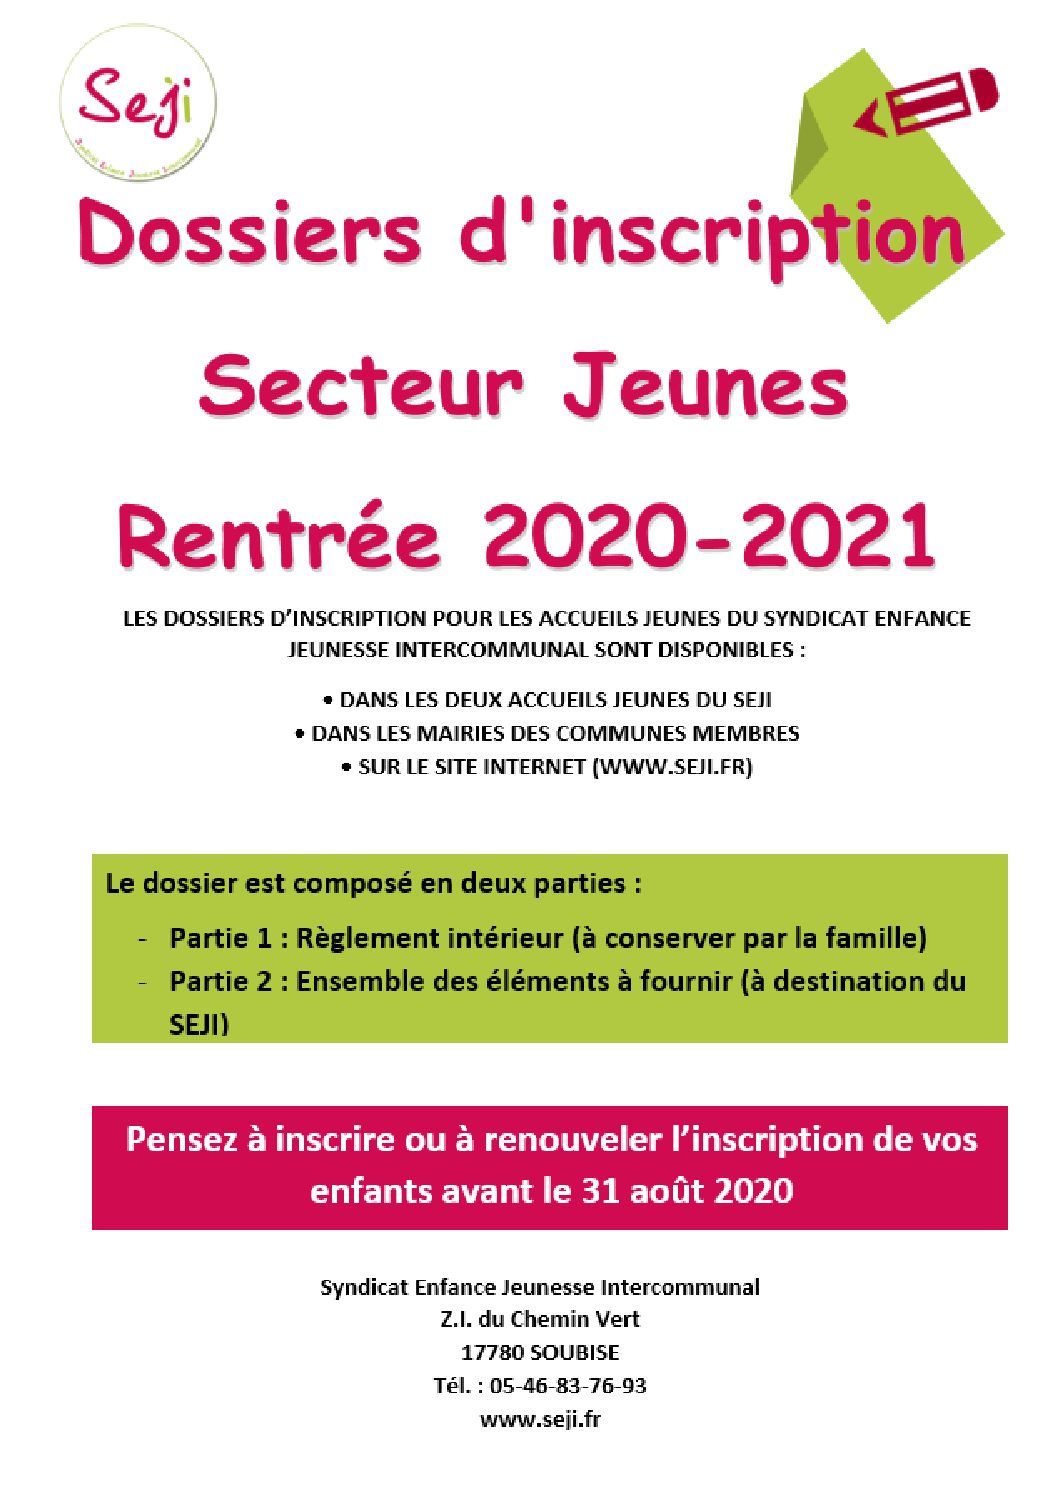 Dossier Inscription Secteur Jeunes 2020 2021 Seji 